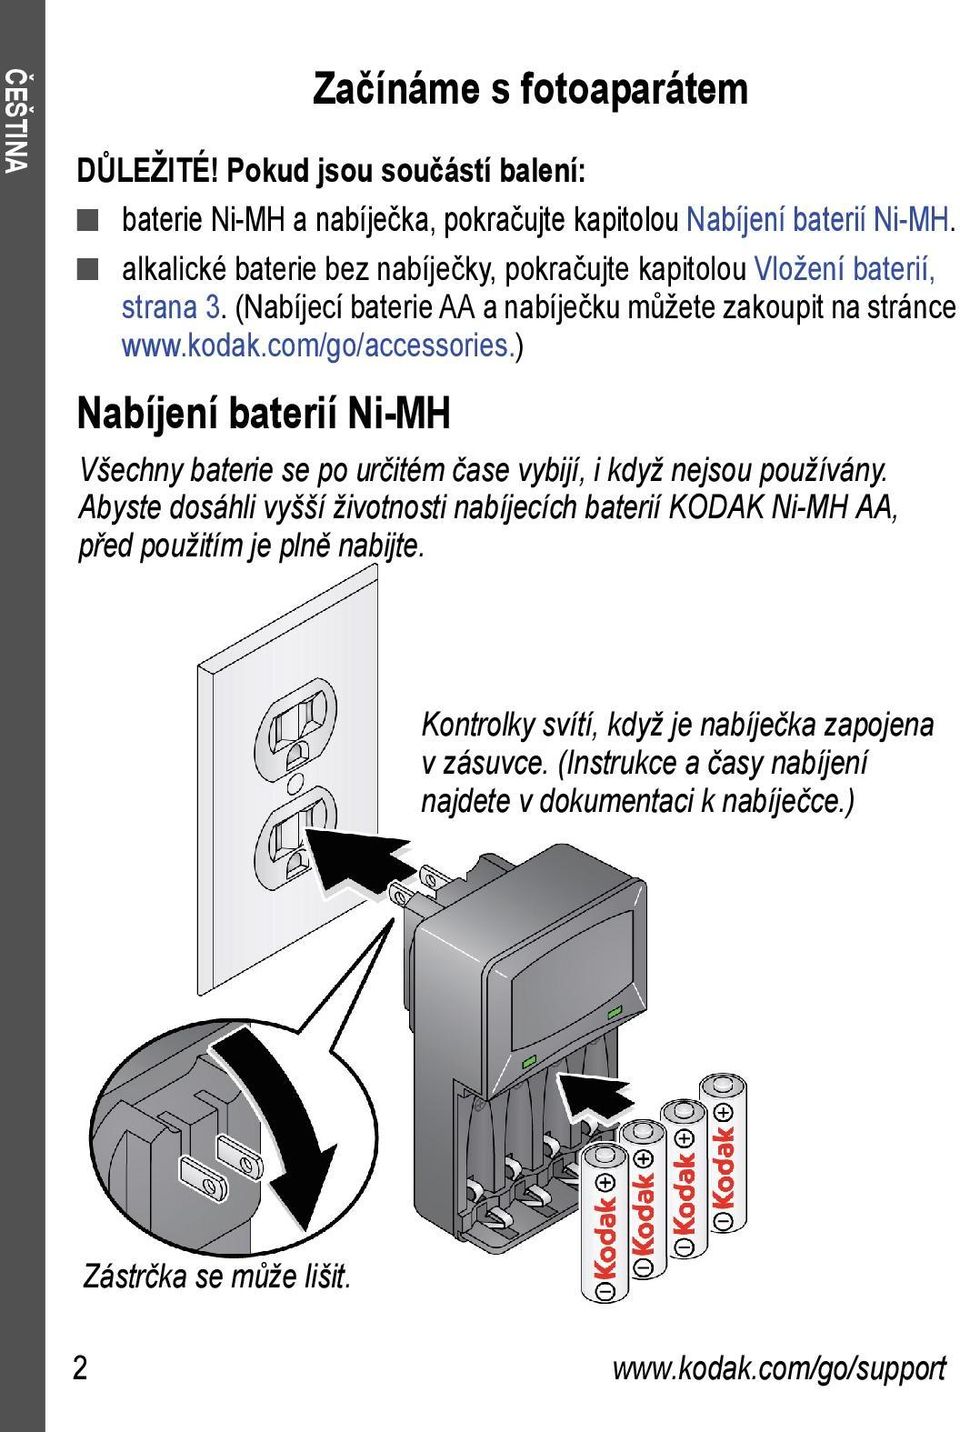 com/go/accessories.) Nabíjení baterií Ni-MH Všechny baterie se po určitém čase vybijí, i když nejsou používány.